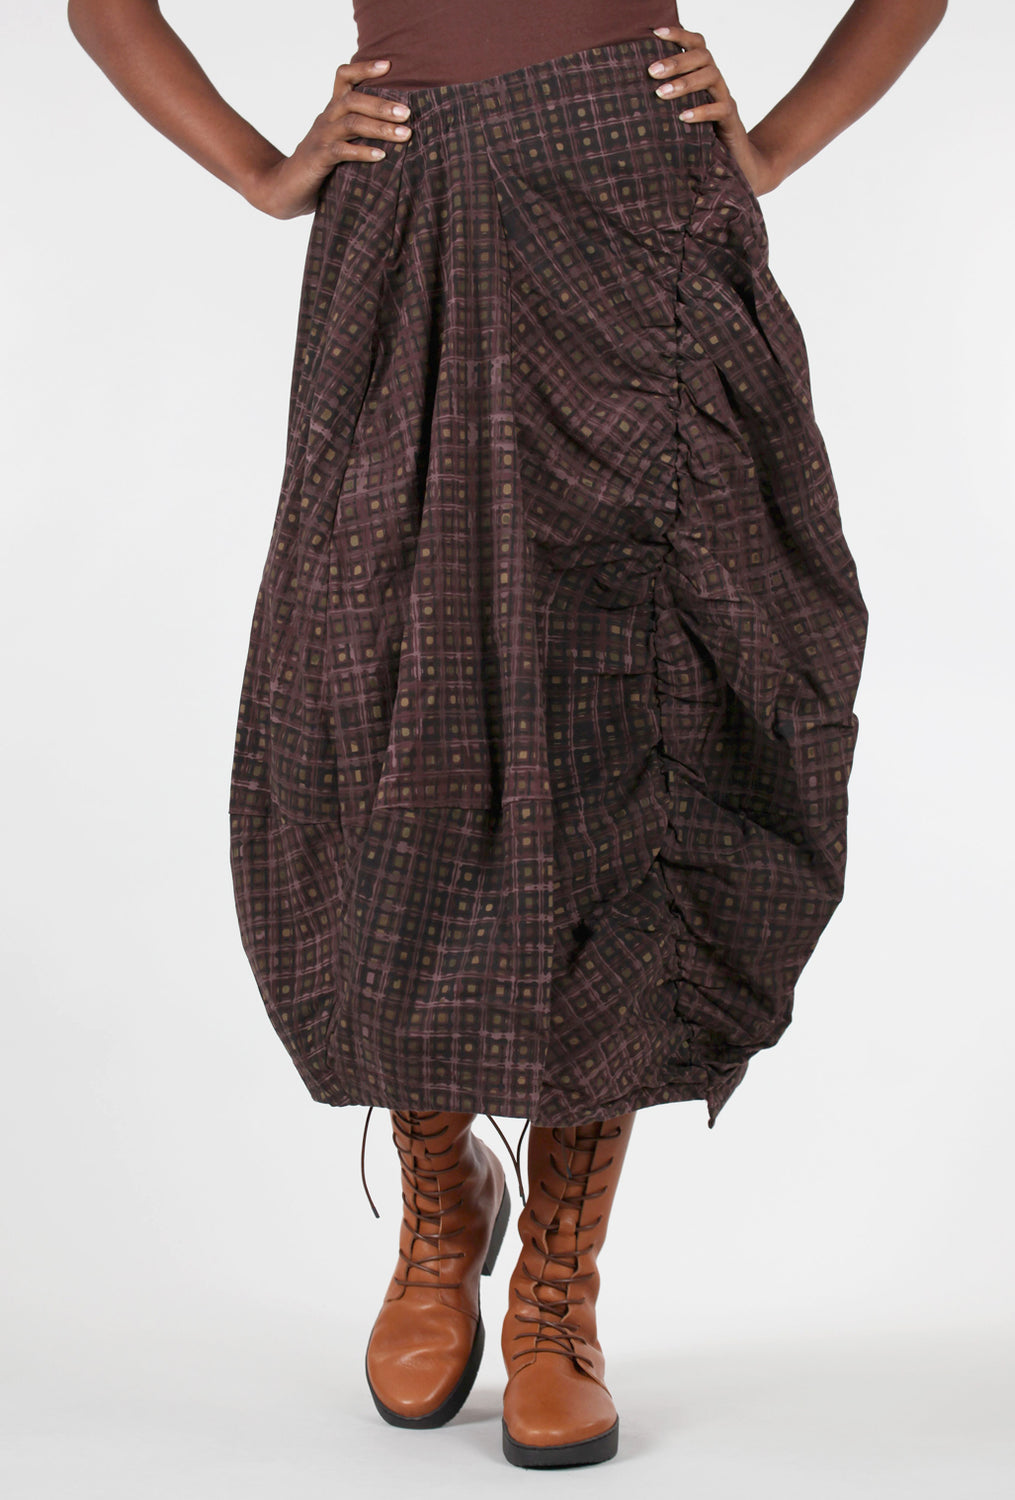 Rundholz Stretch Module Flourish Skirt, Bronze 